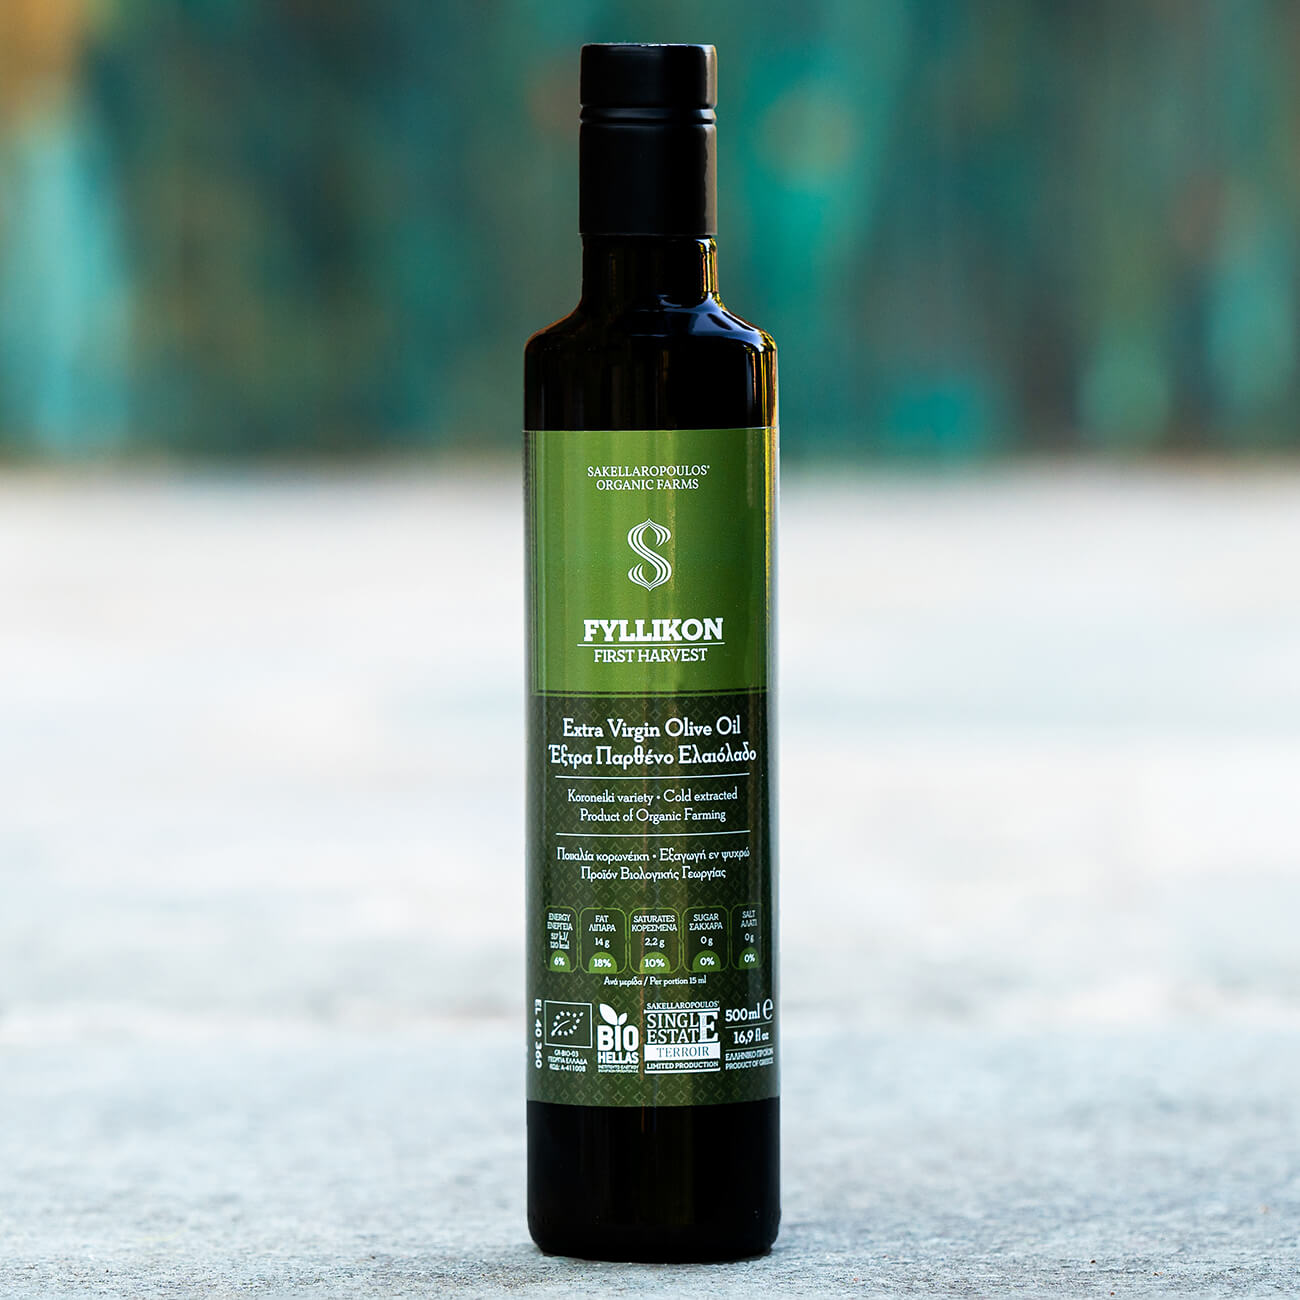 fyllikon Unripe First Harvest Organic Olive oil health claim